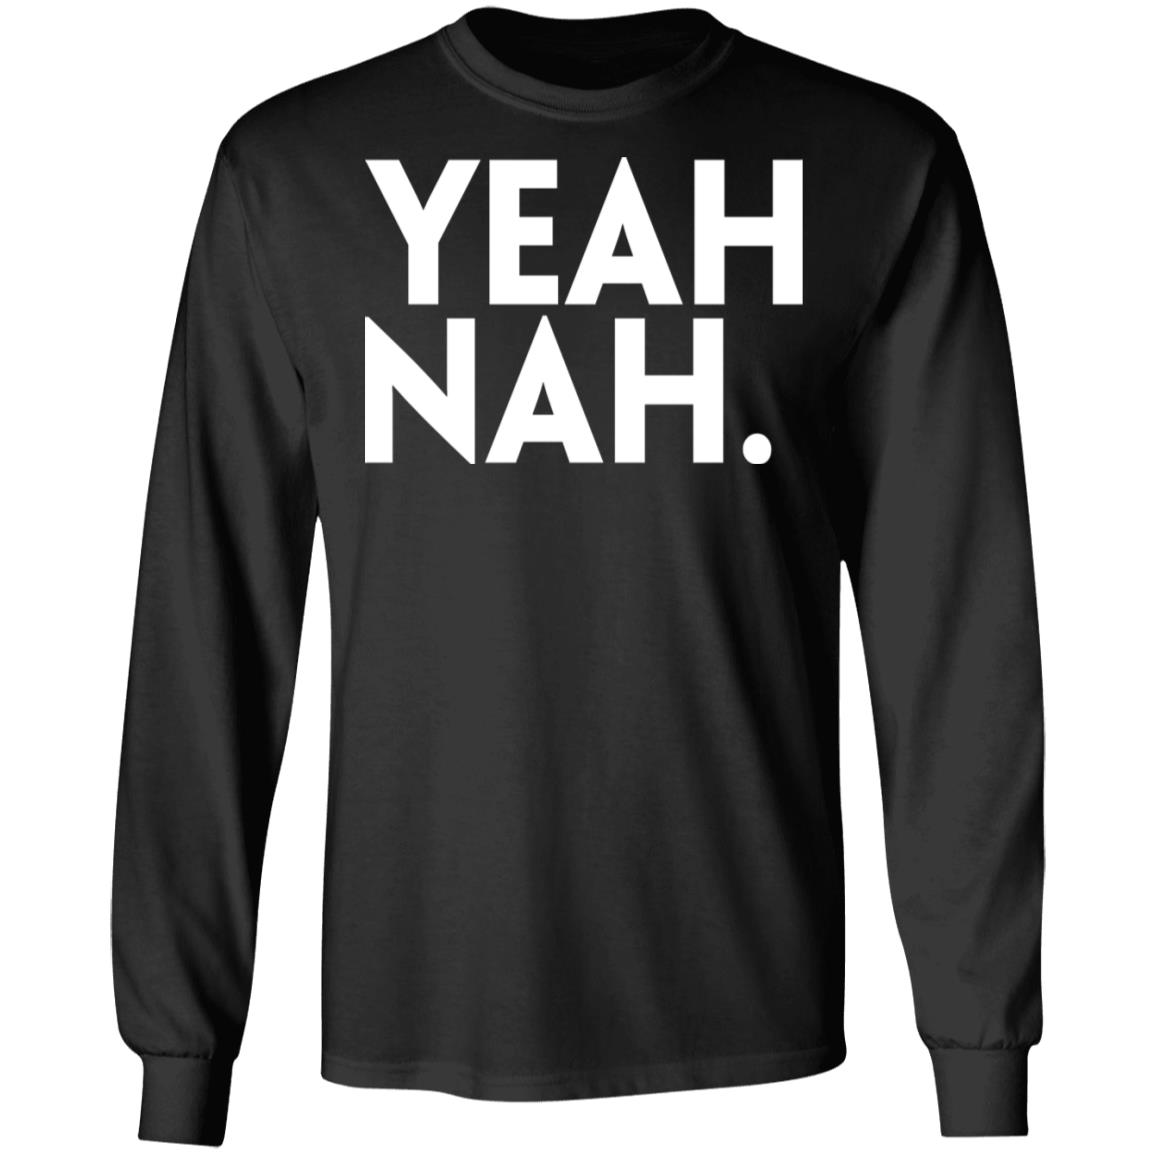 Yeah Nah Shirt | Teemoonley.com